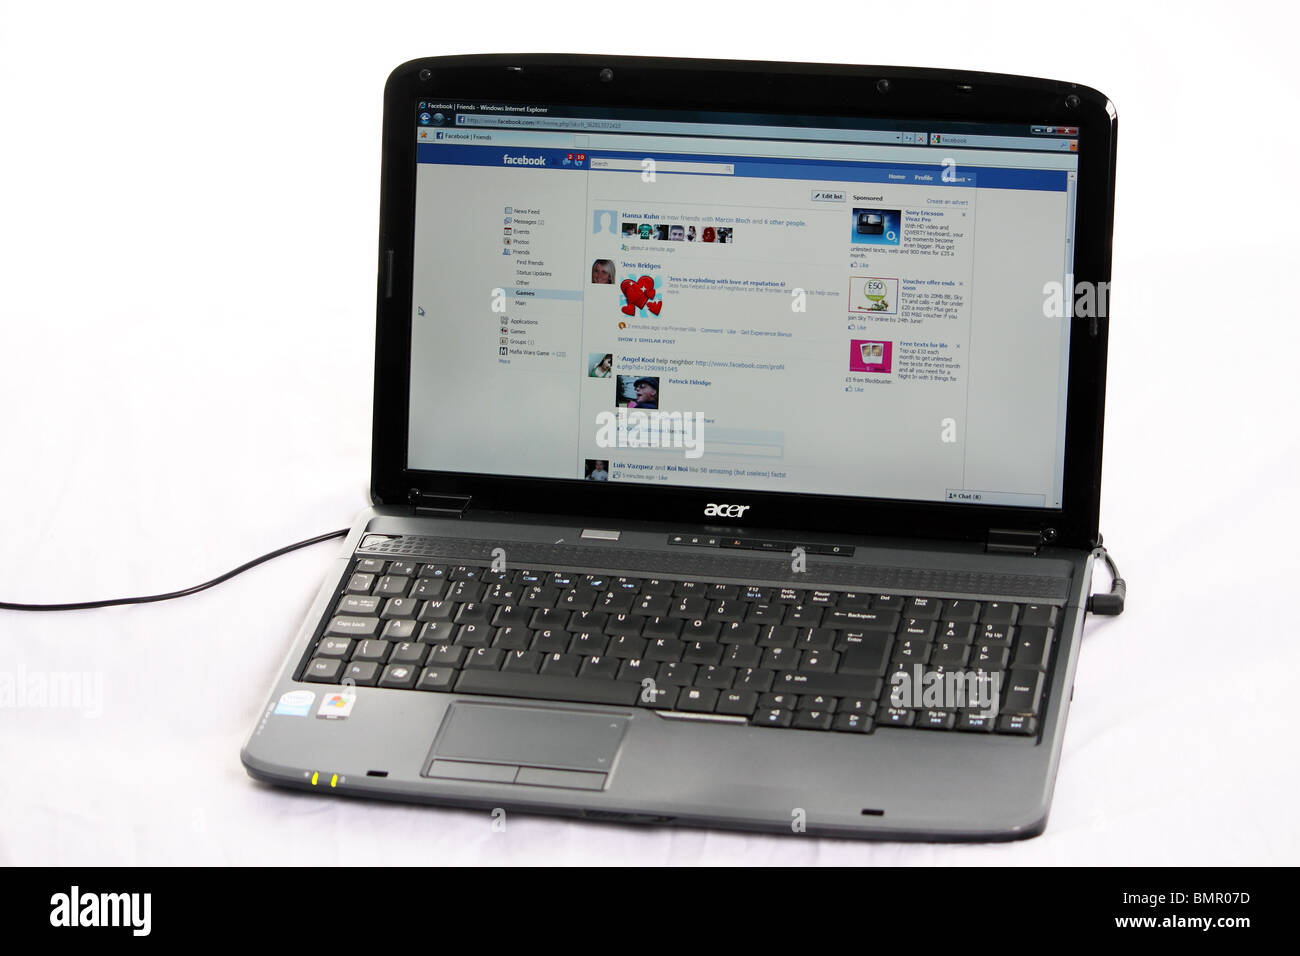 Une photographie montrant le flux de nouvelles de l'internet Website Facebook ; indiqué sur un ordinateur portable Acer prises sur un fond blanc Banque D'Images